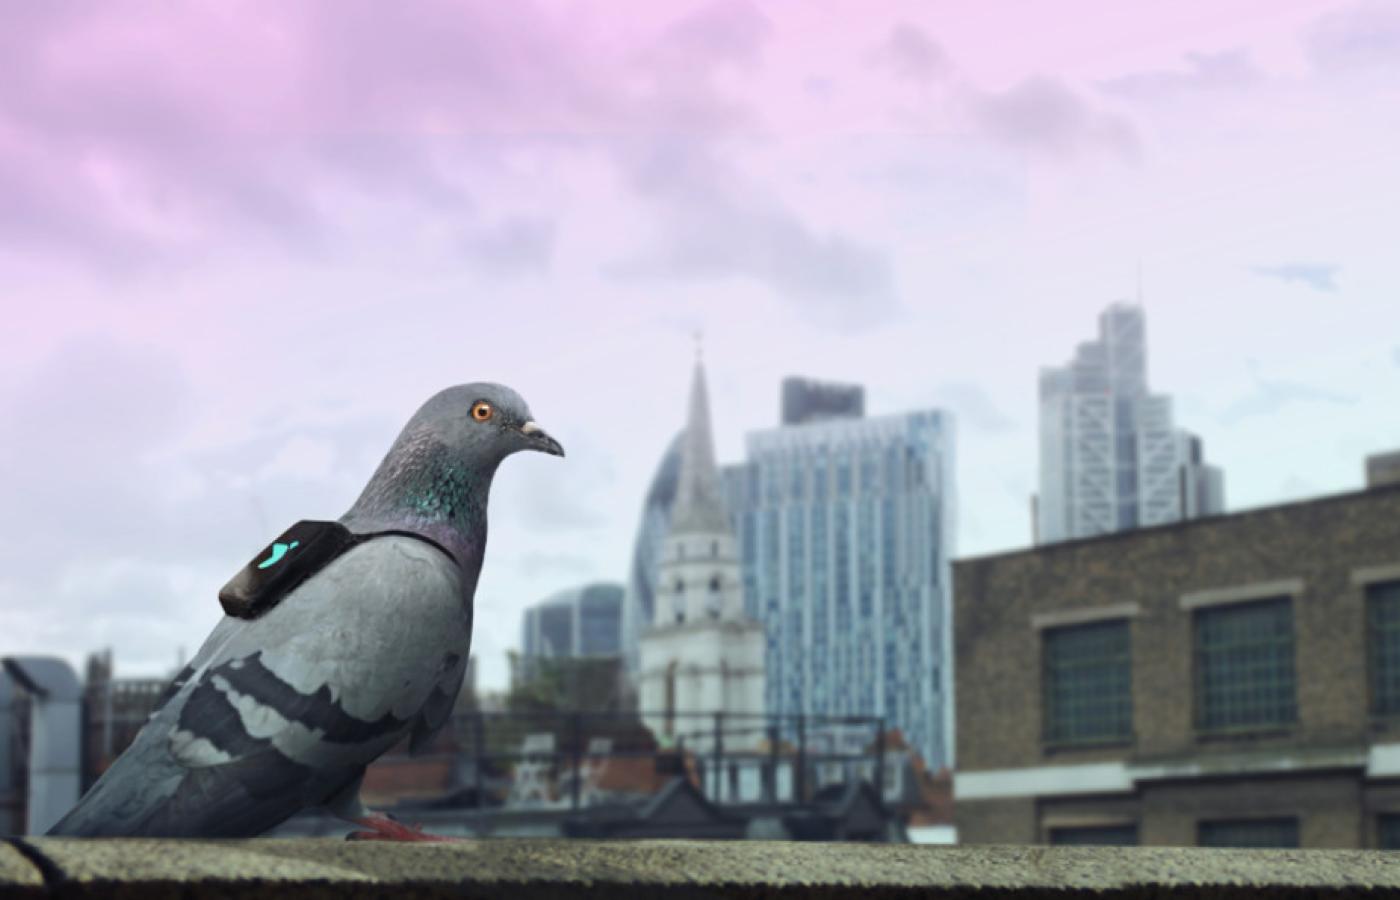 <b>Gołębi patrol.</b> W Londynie stan zanieczyszczenia powietrza miały monitorować... gołębie. Ptaki zostały wyposażone w miniaturowe plecaki z czujnikami zanieczyszczenia powietrza oraz nadajnikiem GPS. Efekty gołębiej pracy można było obserwować na Twitterze.